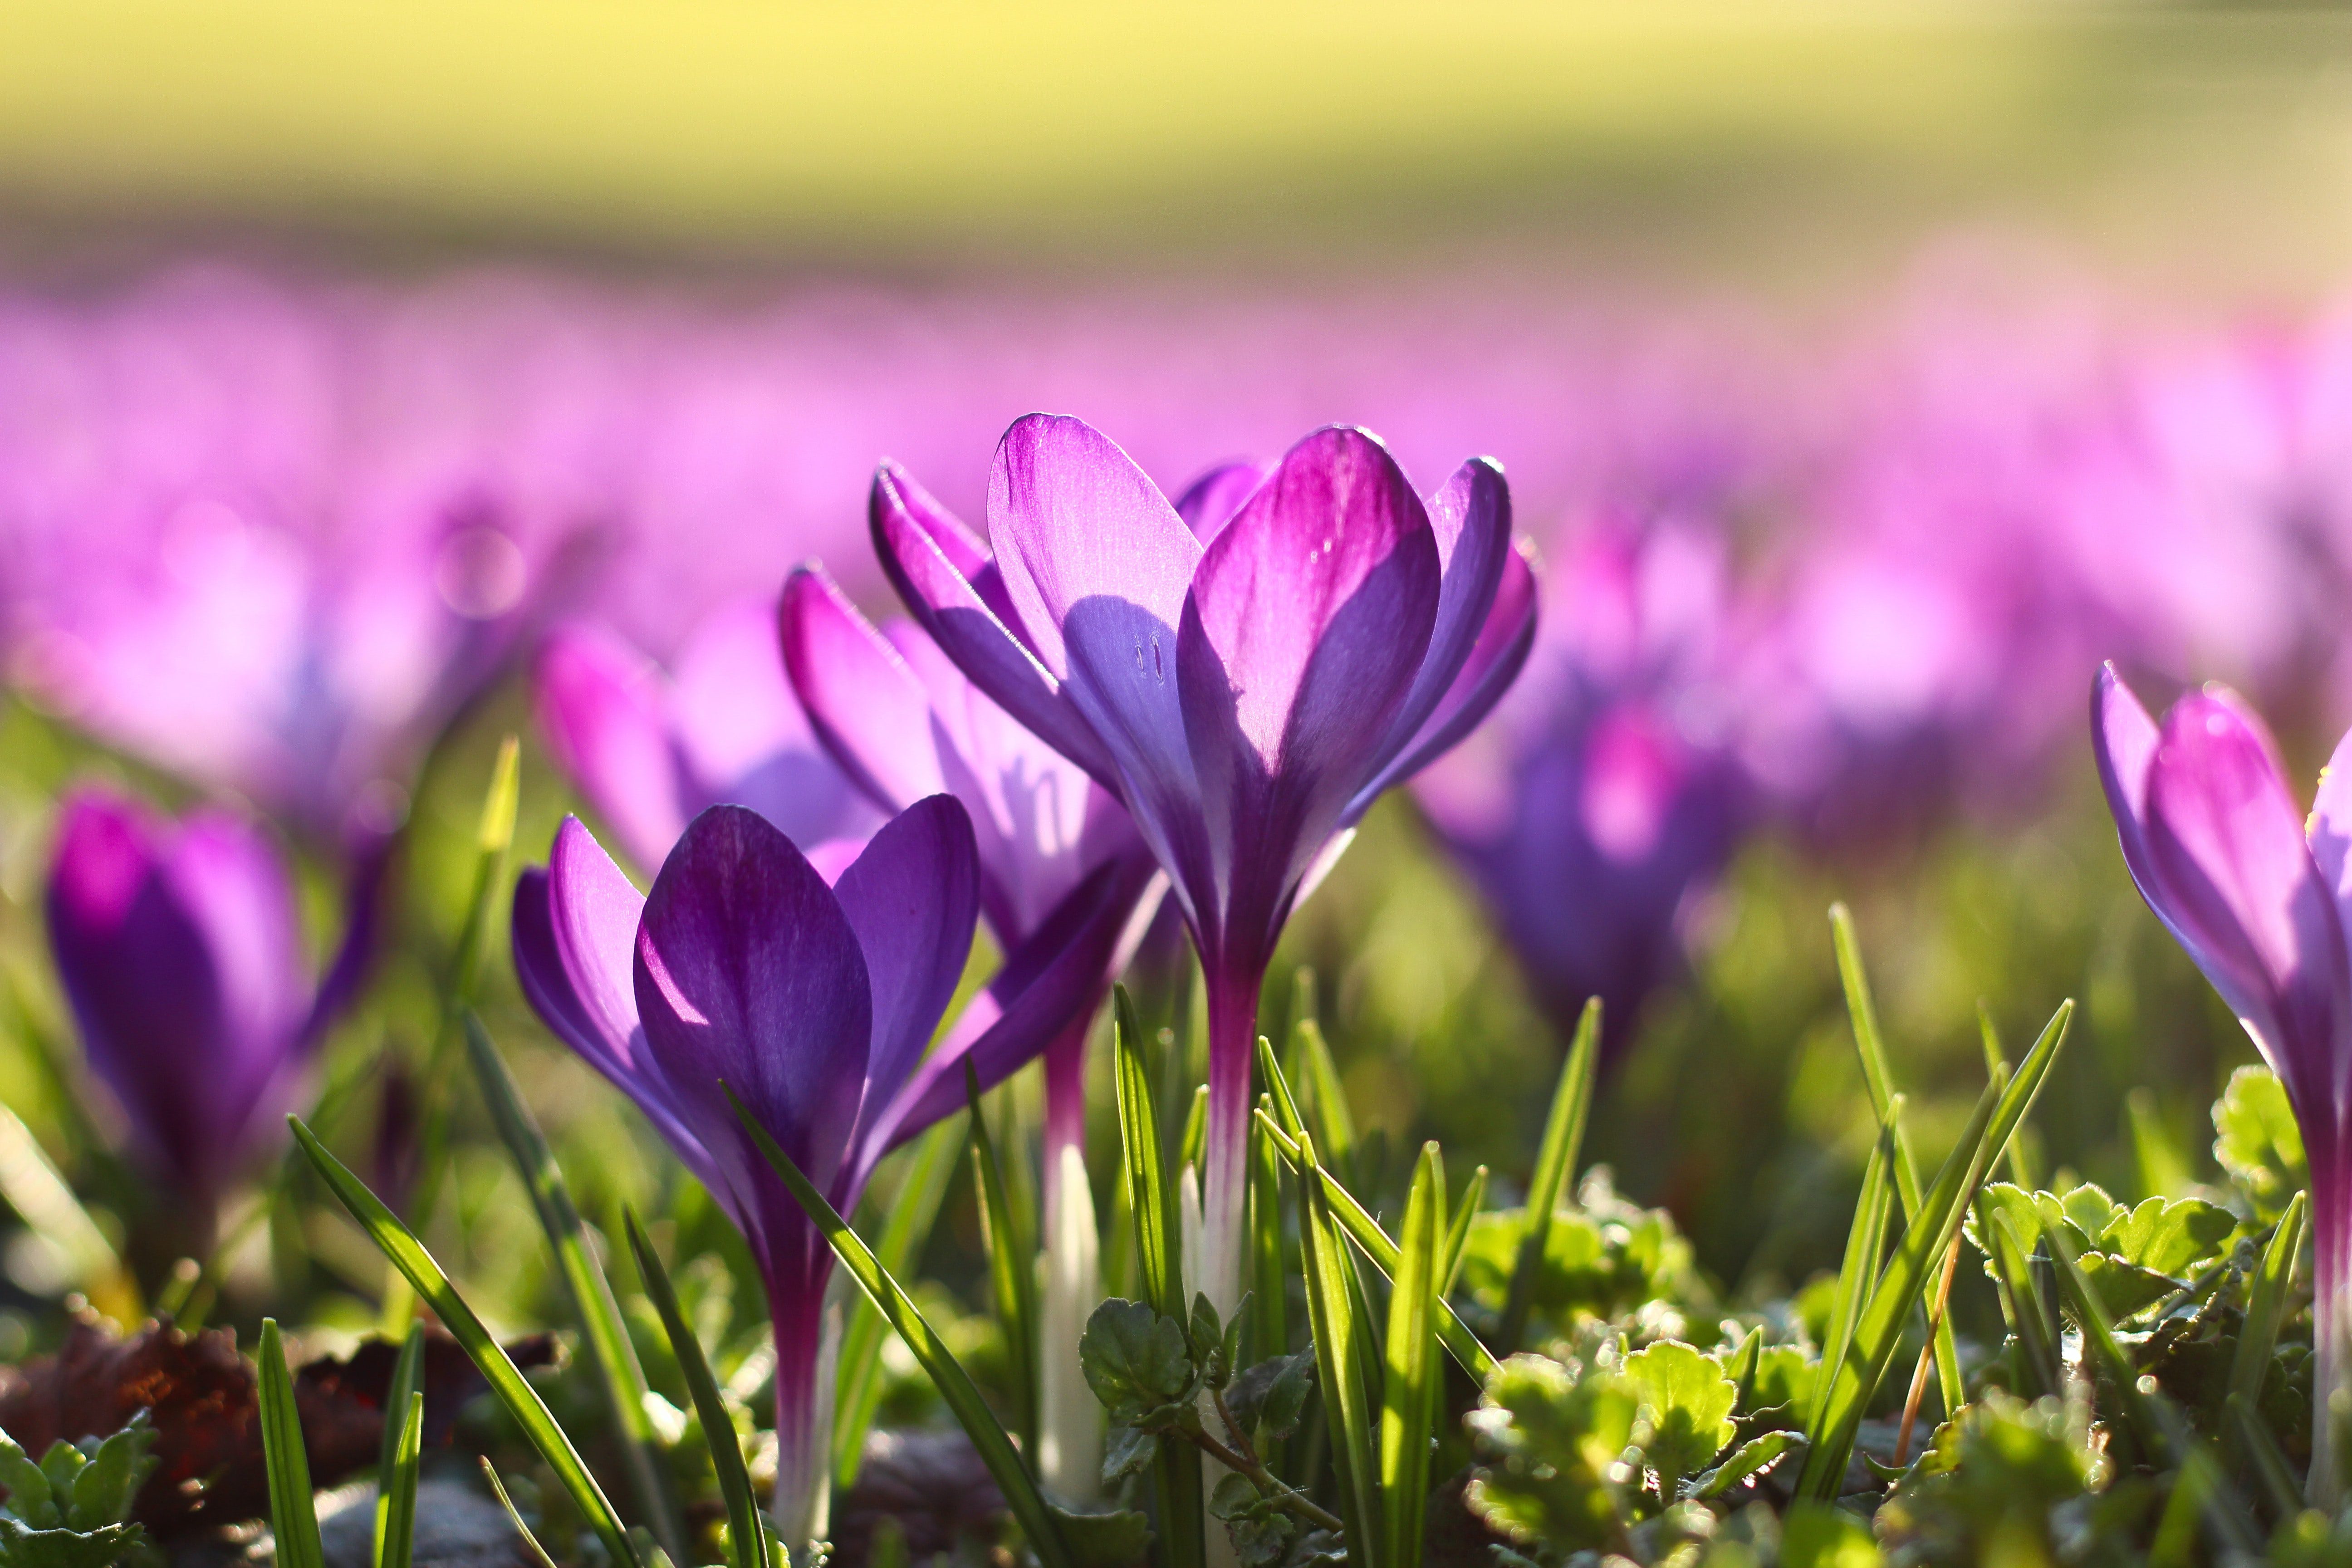 purple spring flowers blooming